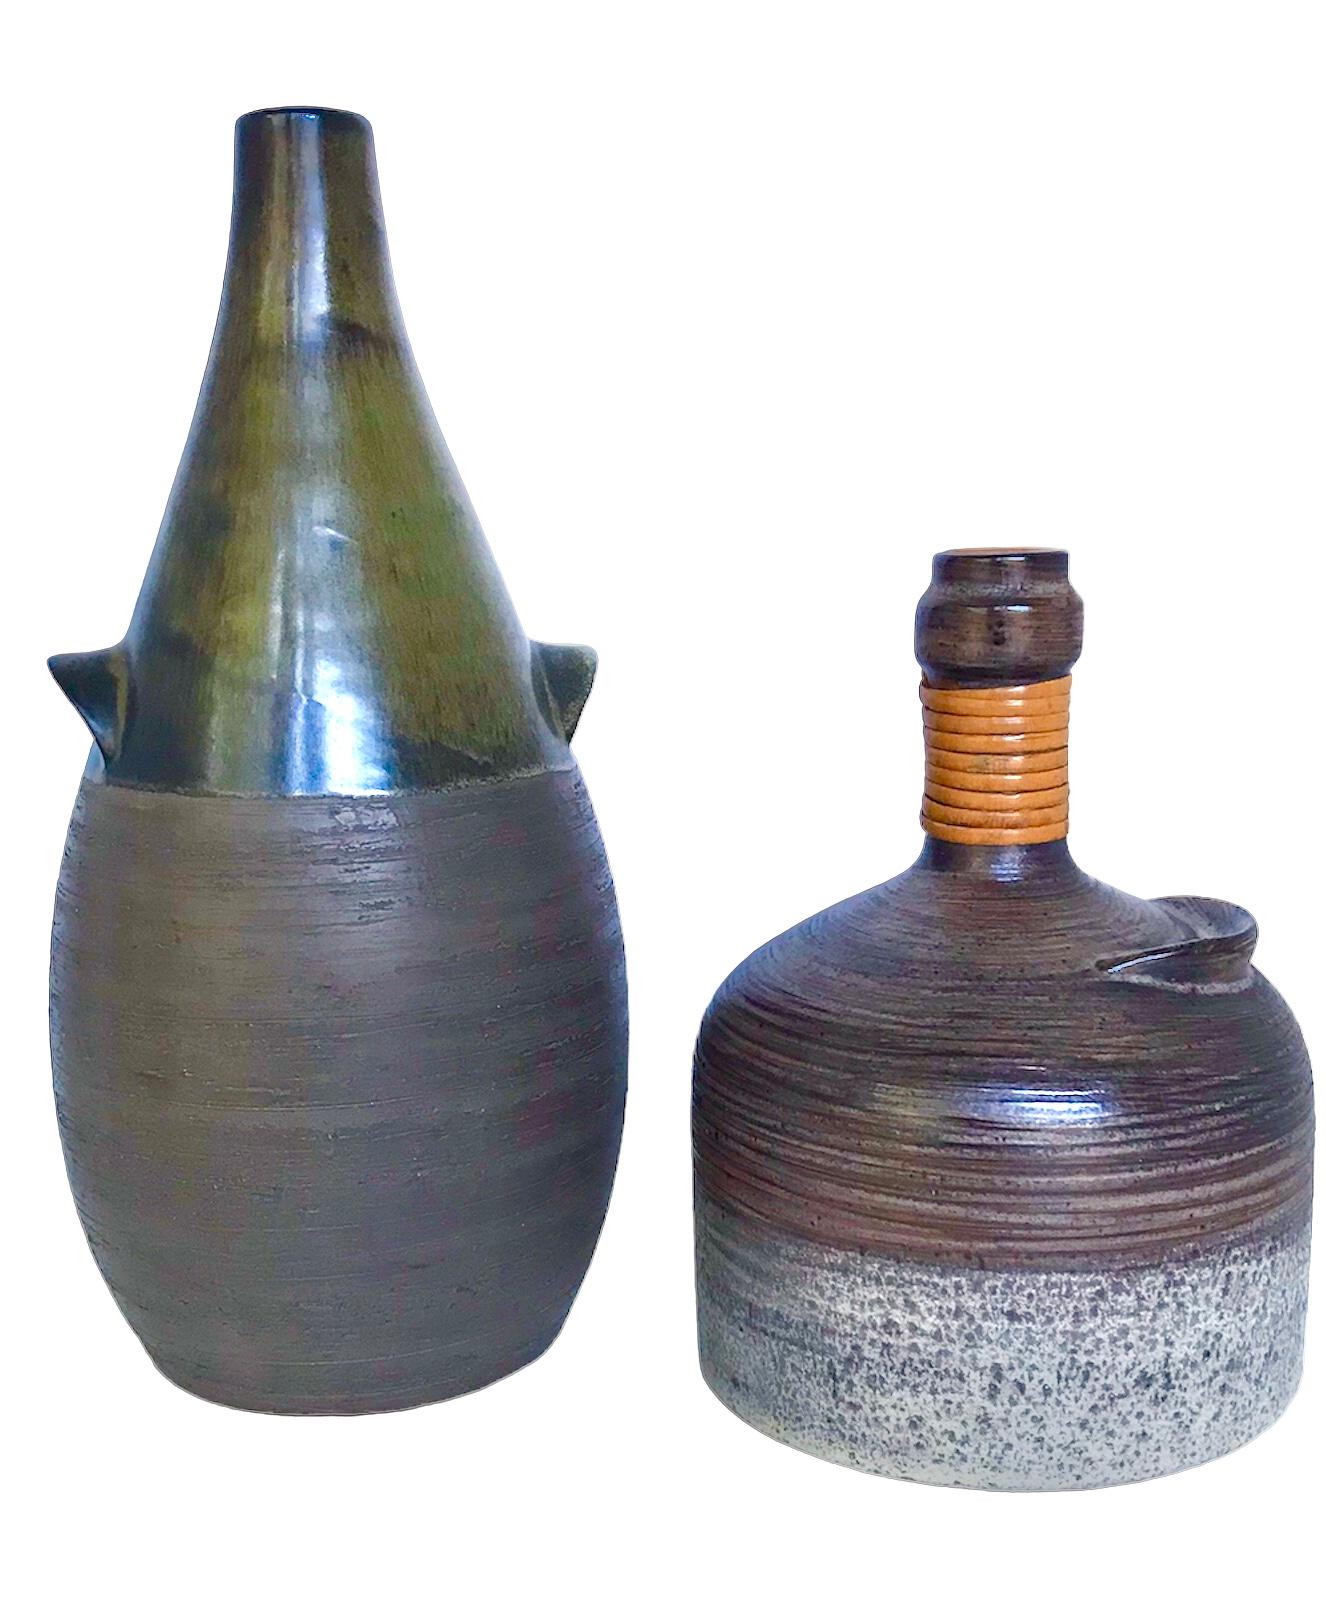 (okoko)Scandinavian Mid Century Modern Pottery Bottle Vase from BR Denmark 1960s For Sale 6